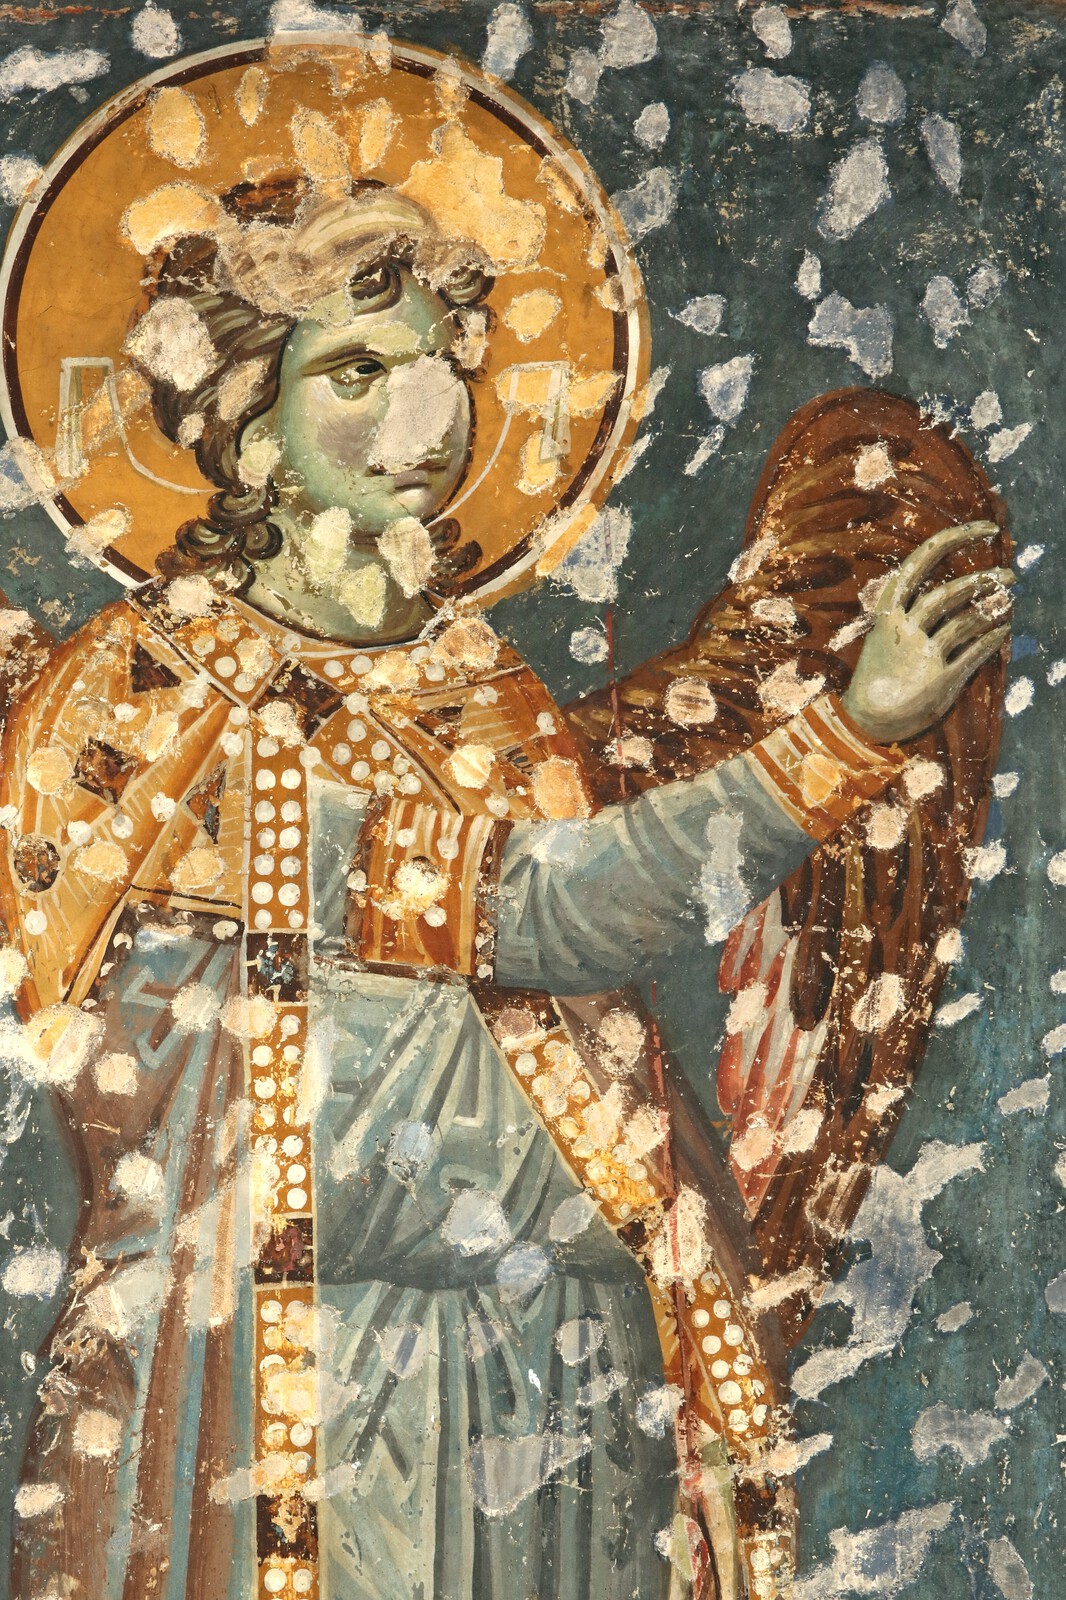 The Annunciation, archangel Gabriel